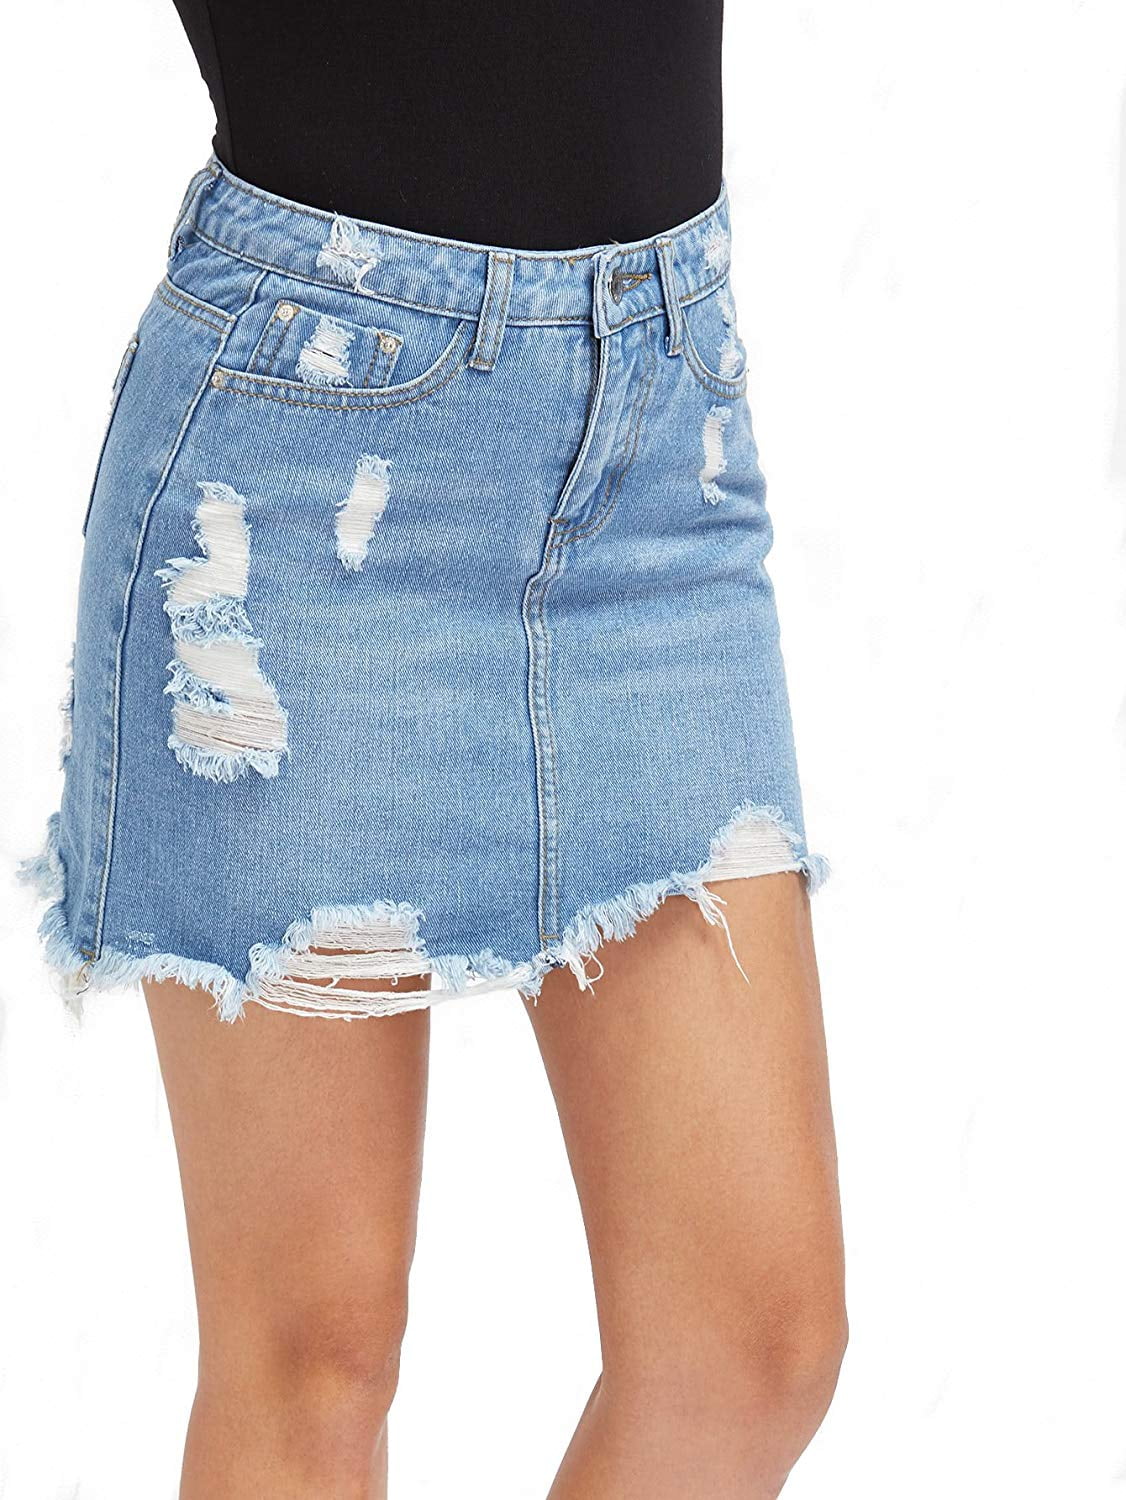 a jean skirt